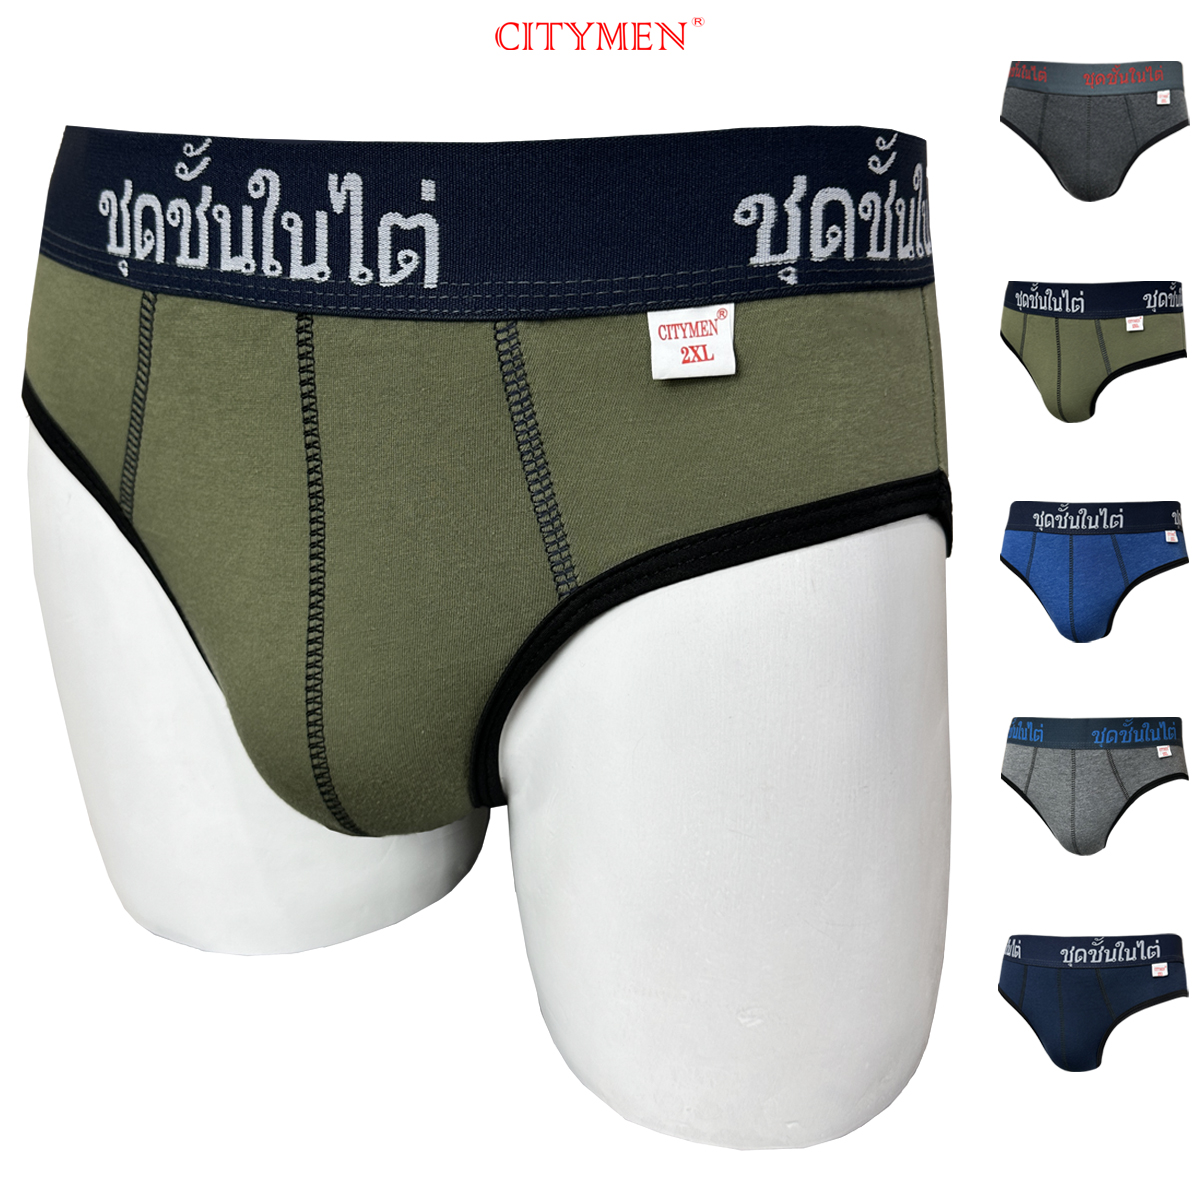 Đồ Lót Nam vải cotton 2 chiều lưng Thái hiệu CITYMEN, màu ngẫu nhiên, quần lót - LMTK-THAI2C